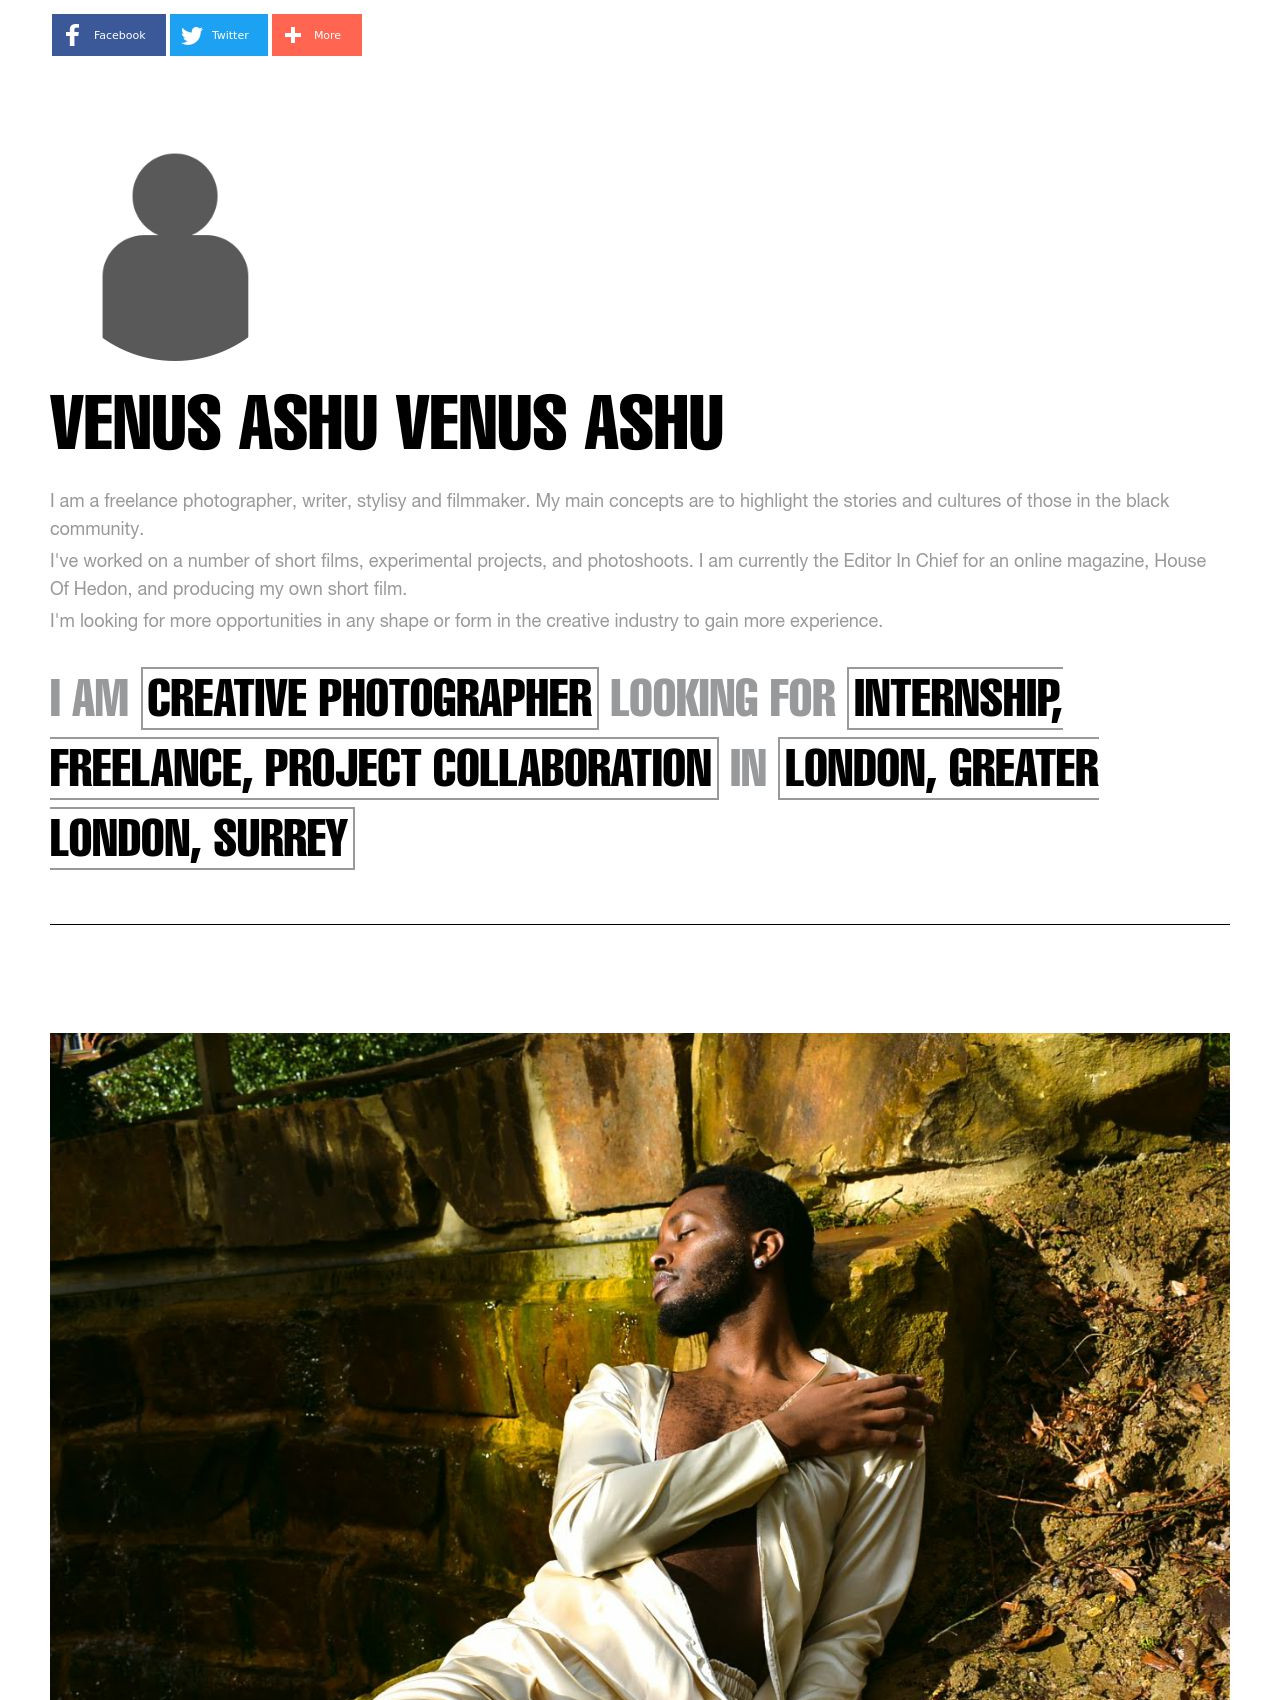 Venus Ashu Venus Ashu